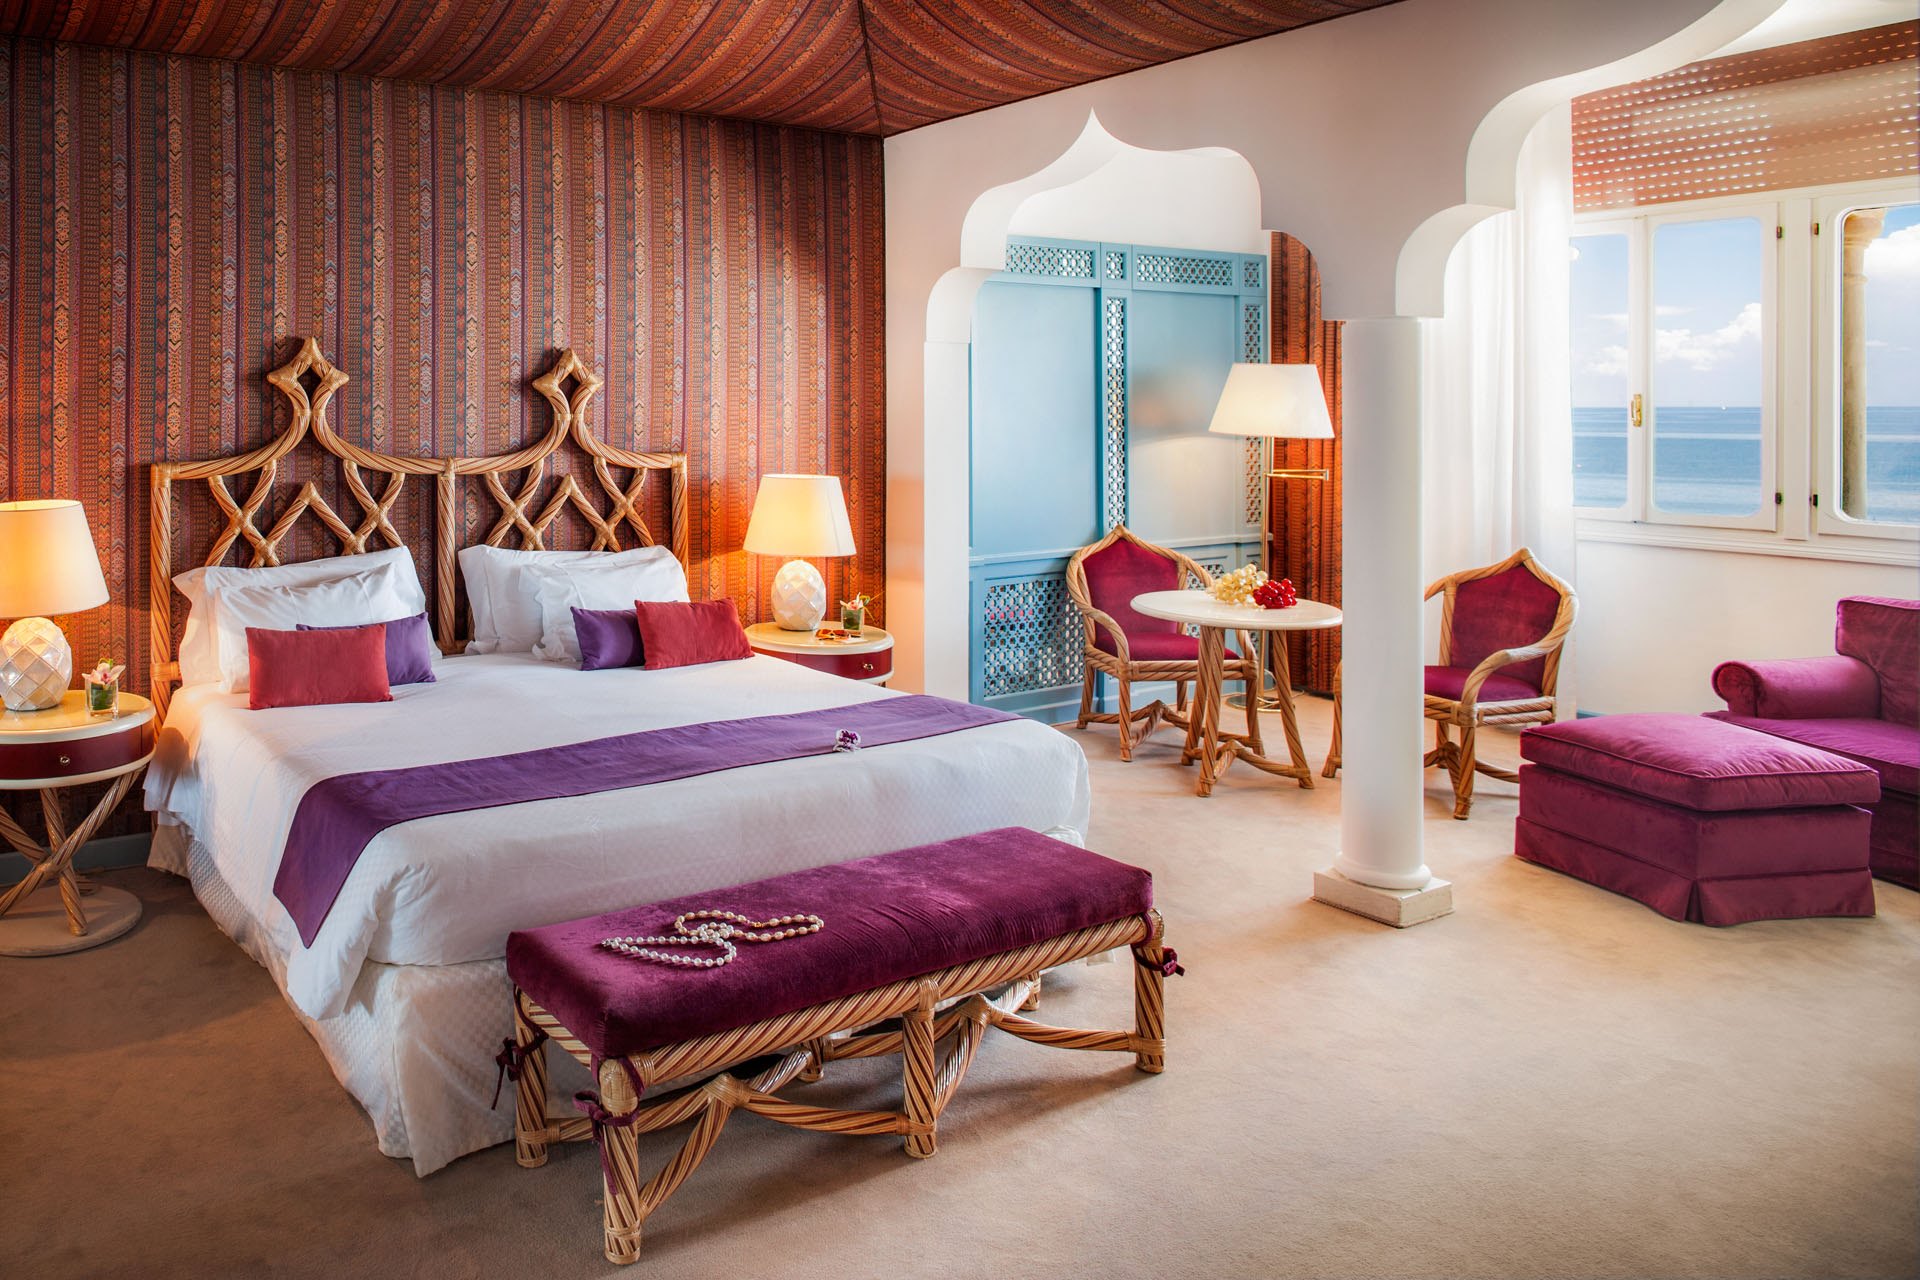 camera dal design inconfondibile arredi lusso colorati hotel excelsior venezia lido cinque stelle lusso resort arredi realizzati dal gruppo rodi 